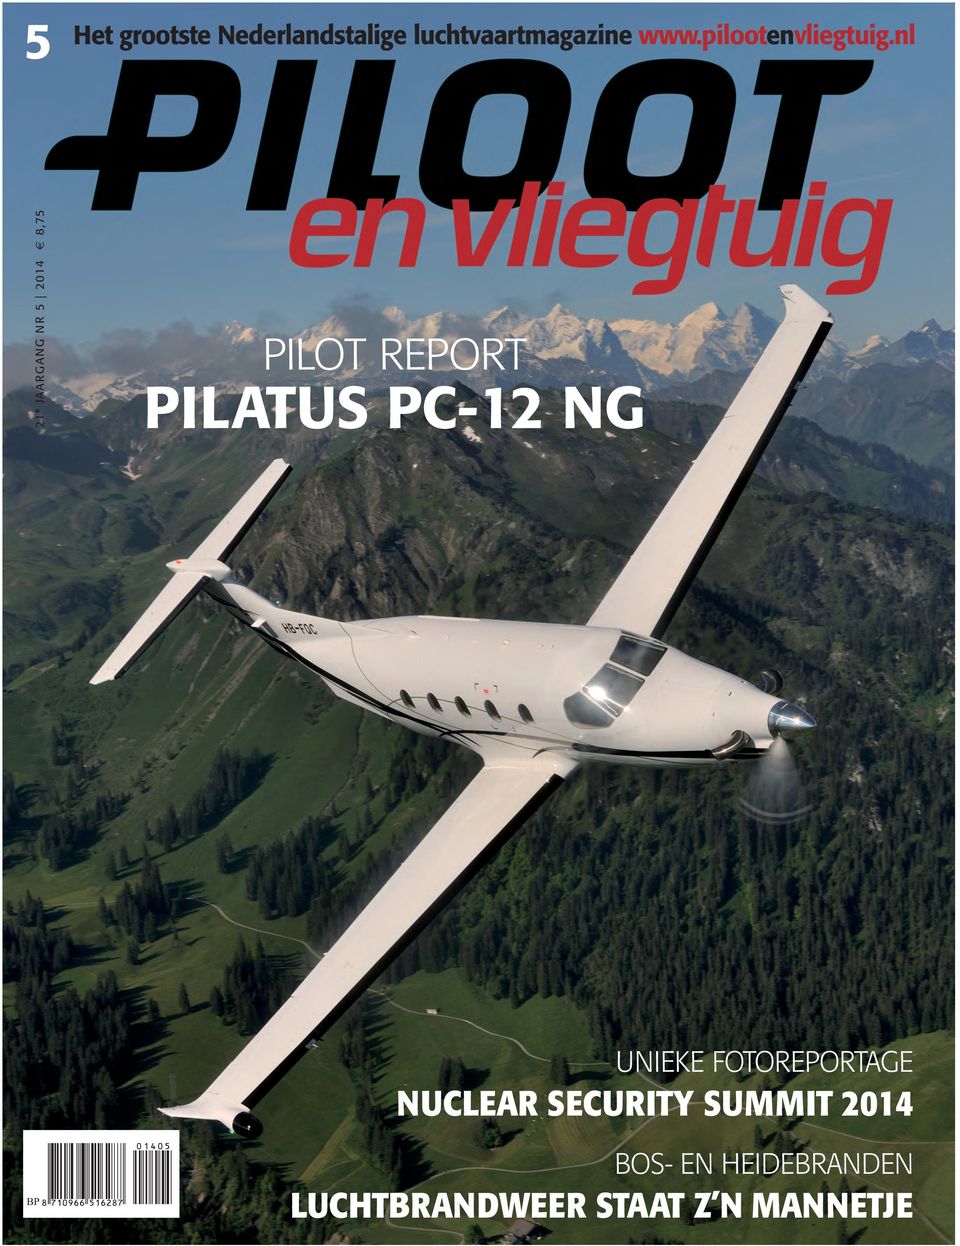 nl 21 e JAARGANG NR 5 2014 8,75 pilot report pilatus pc-12